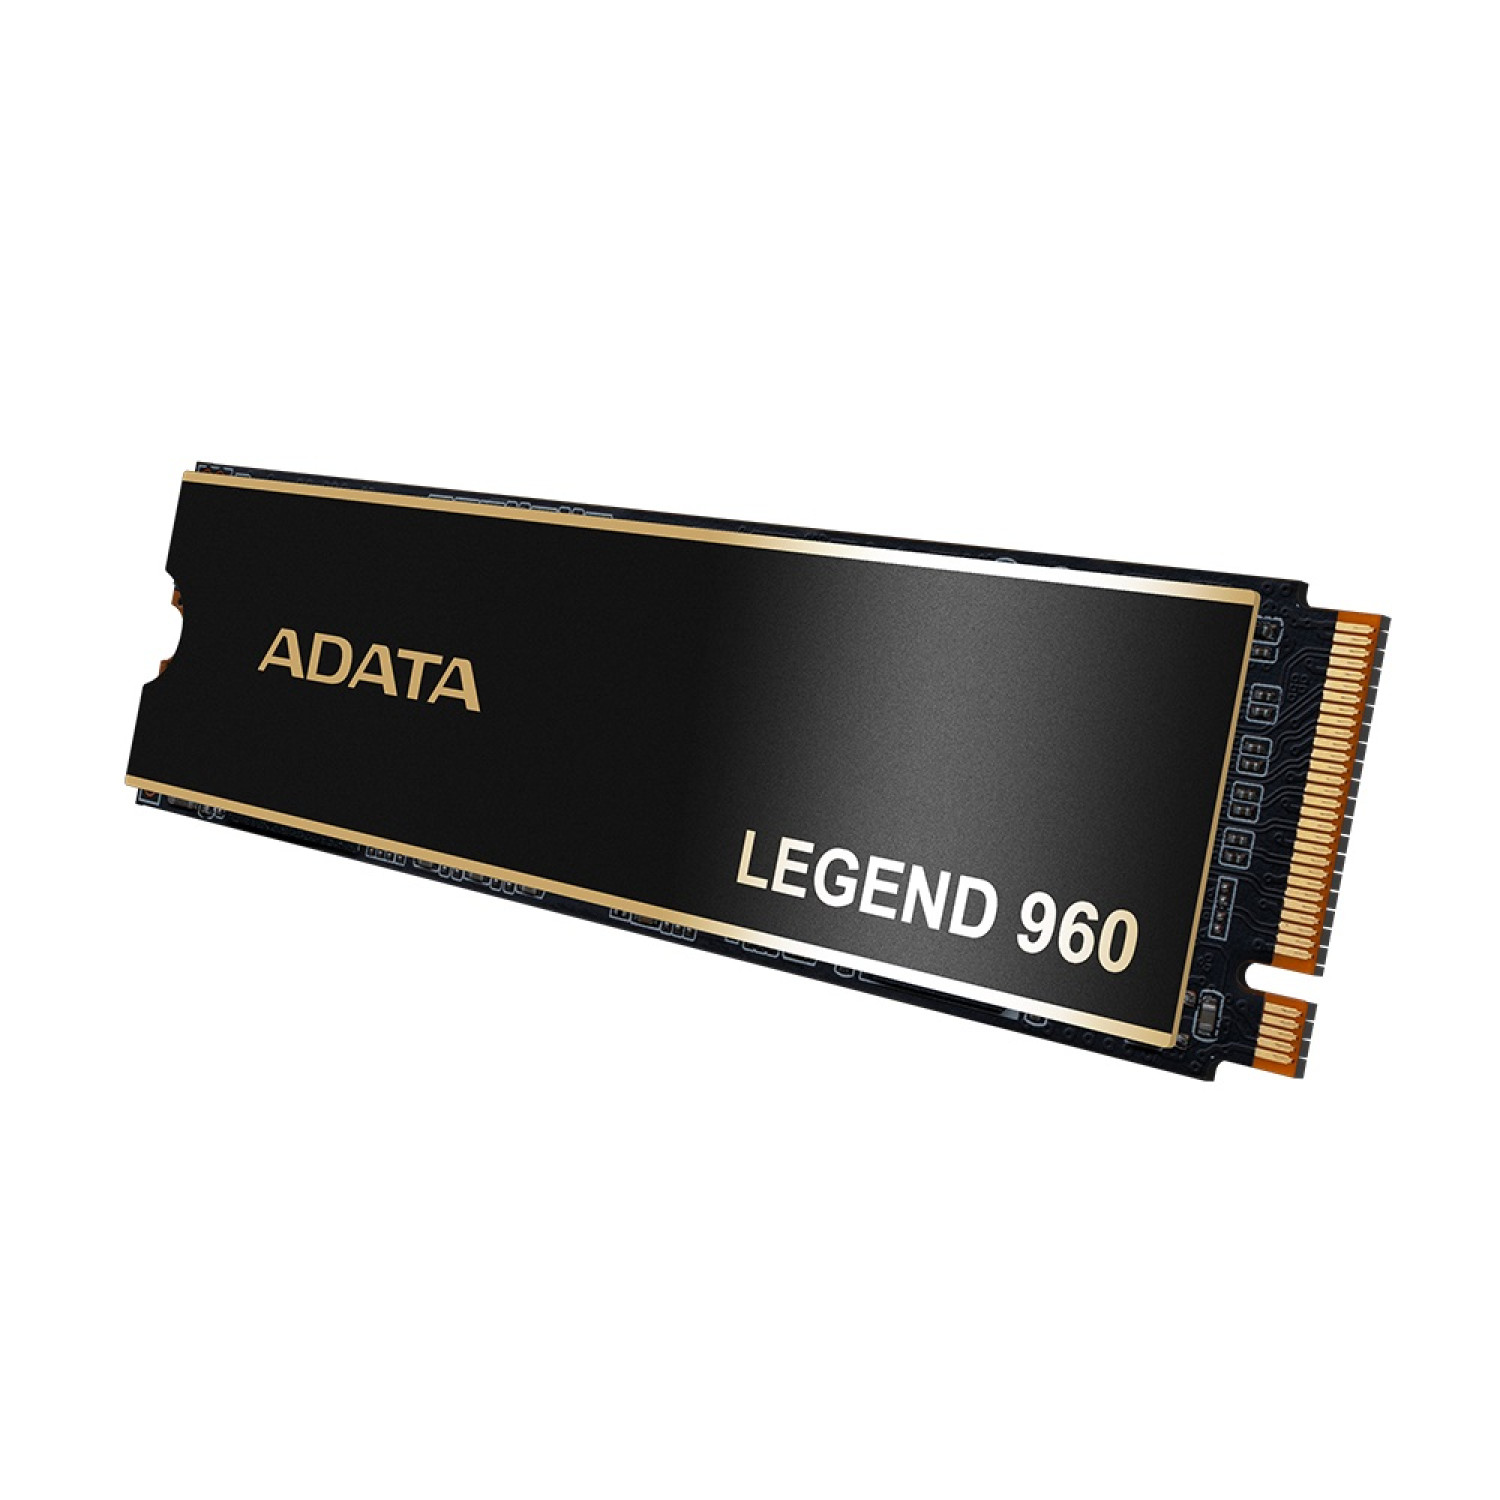 حافظه اس اس دی ADATA Legend 960 1TB-1